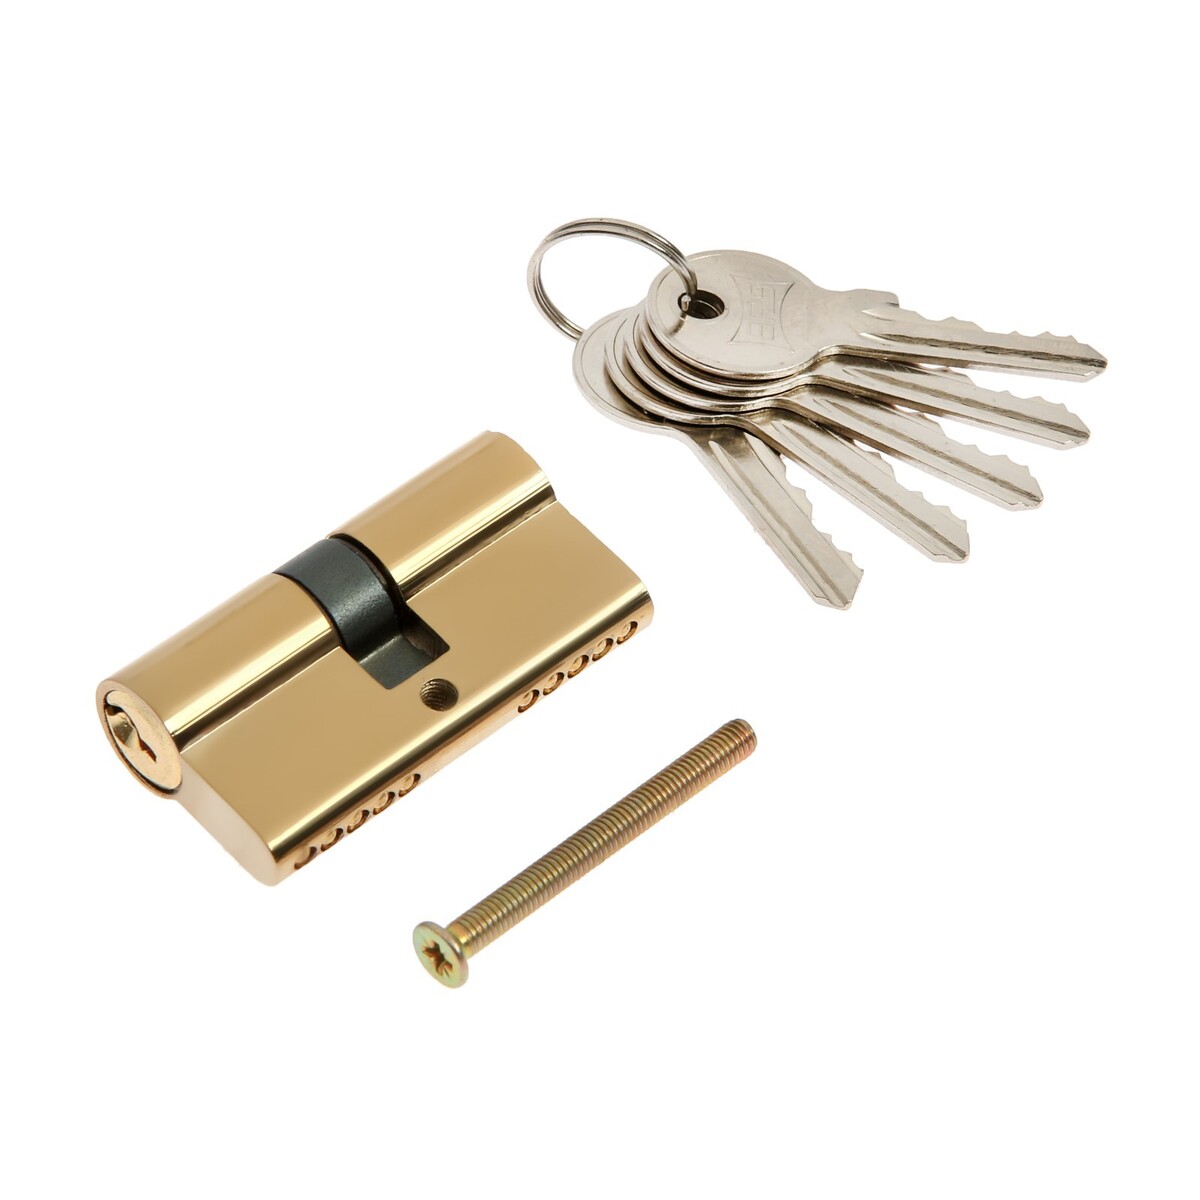 Цилиндровый механизм, 60 мм, английский ключ, 5 ключей, цвет золото цилиндровый механизм 70 мм с вертушкой английский ключ 5 ключей золото